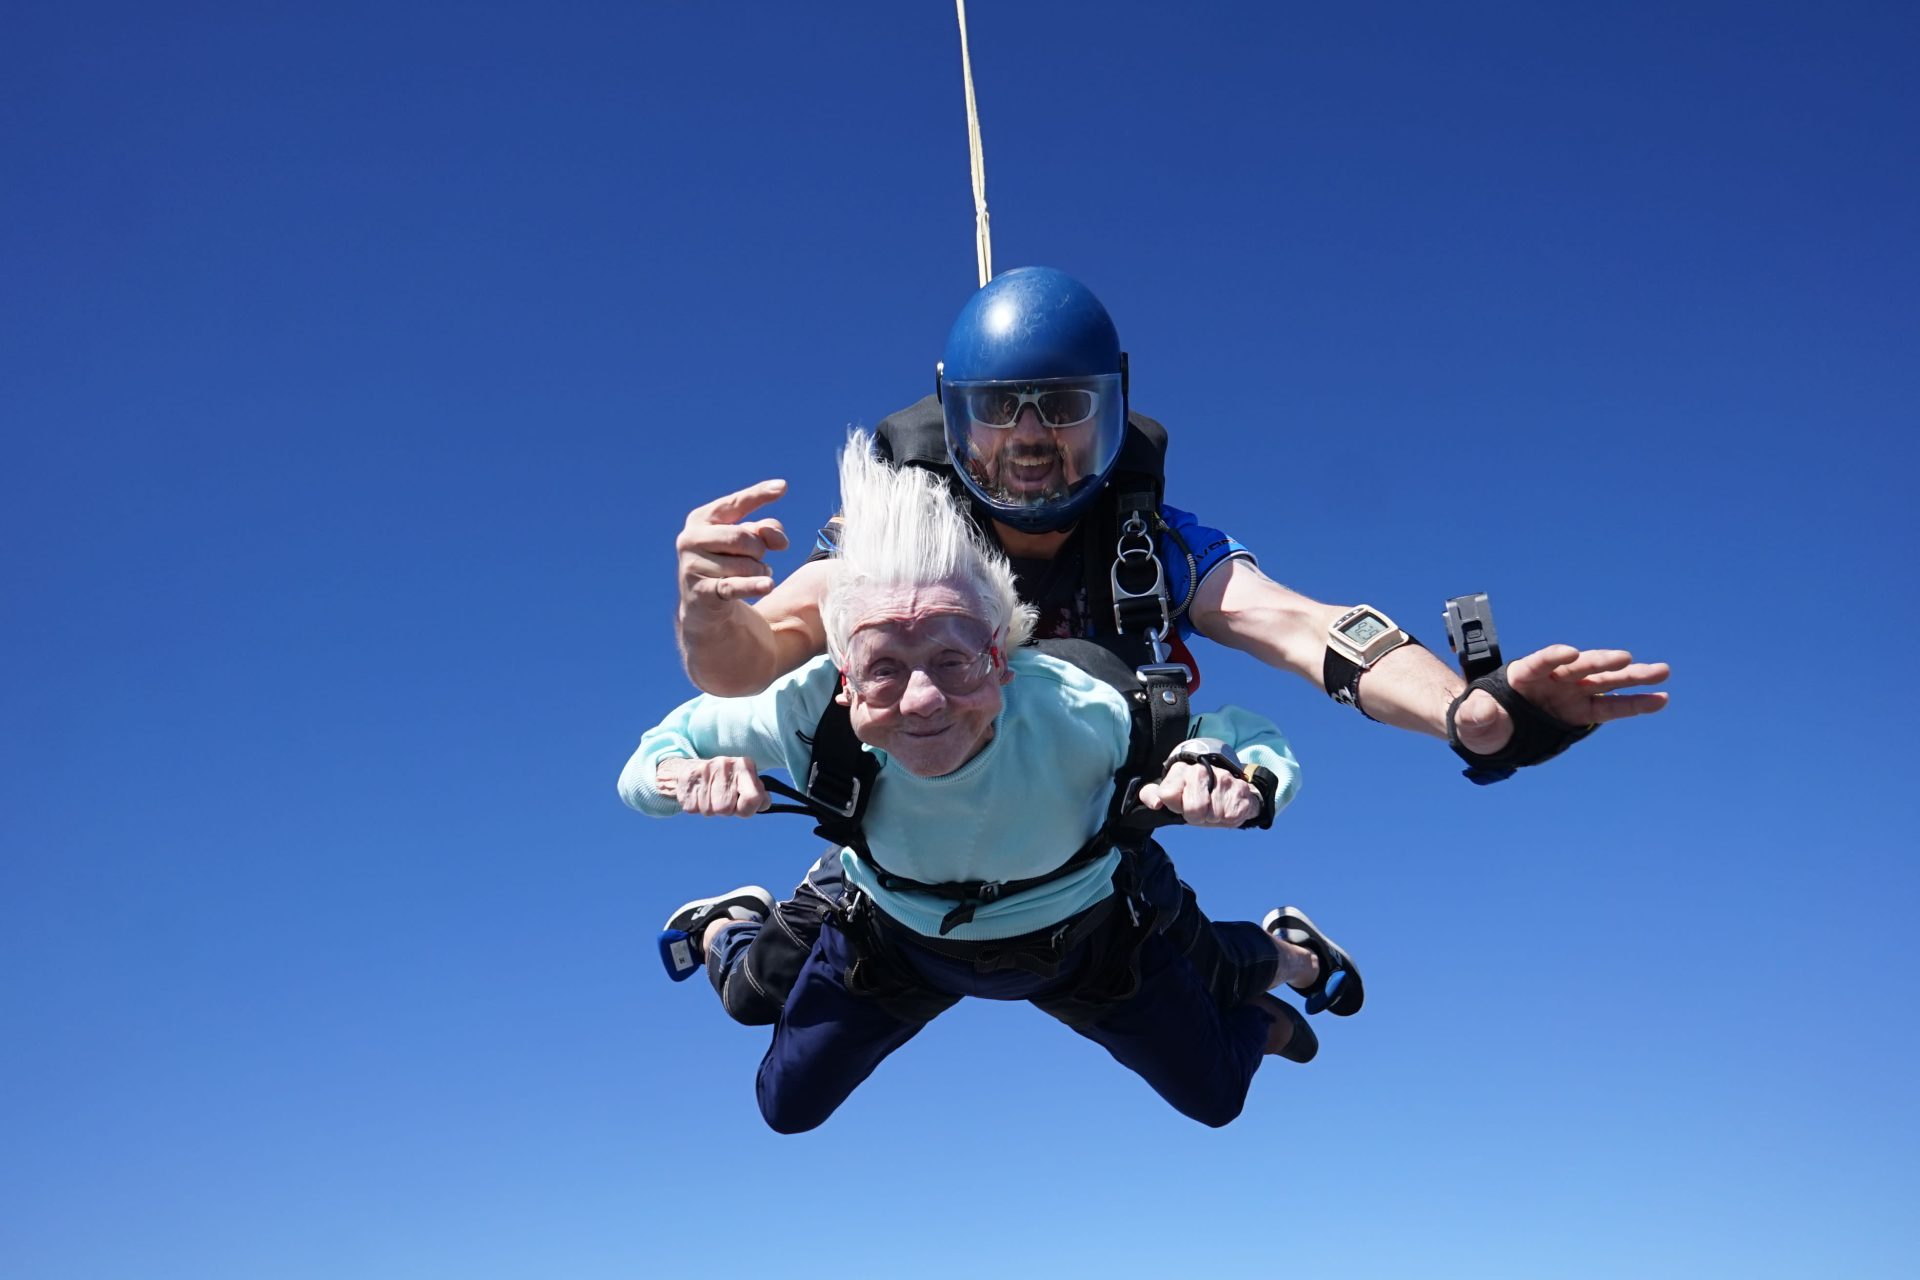 Morreu a mulher que saltou de paraquedas aos 104 anos